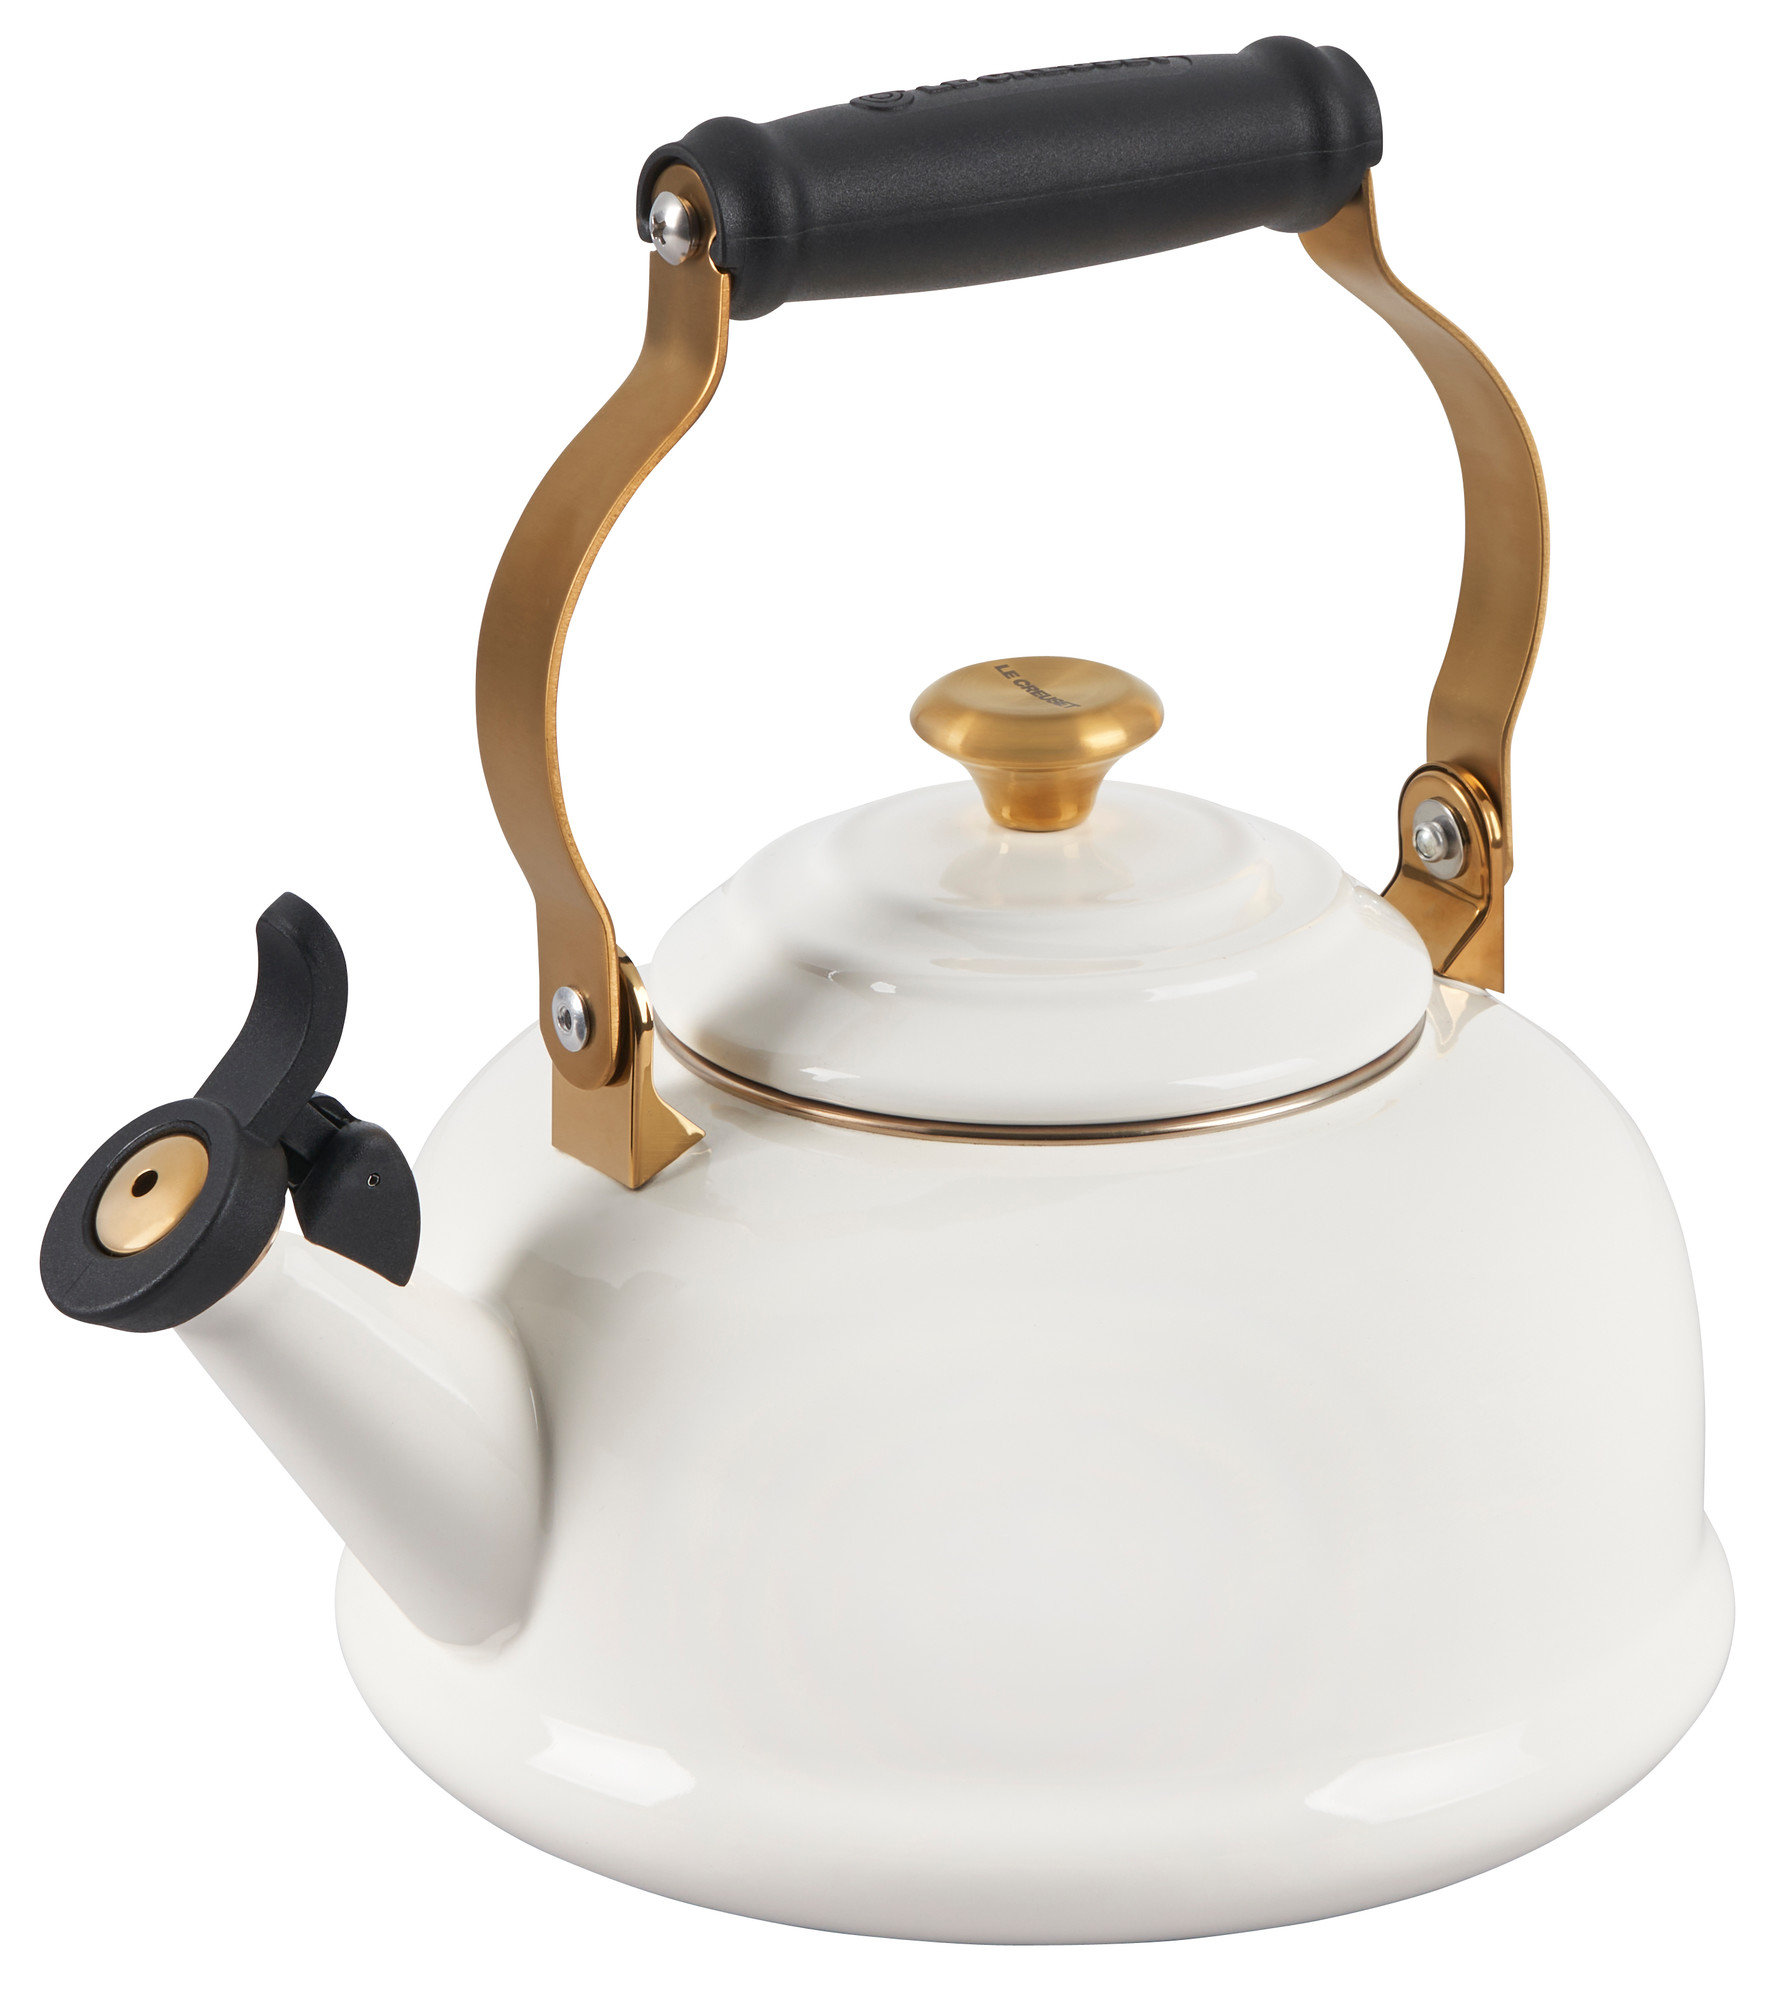 1. 1 L Ceramic Enameled Teapot Vintage Circle Dot Tea Kettle Hot